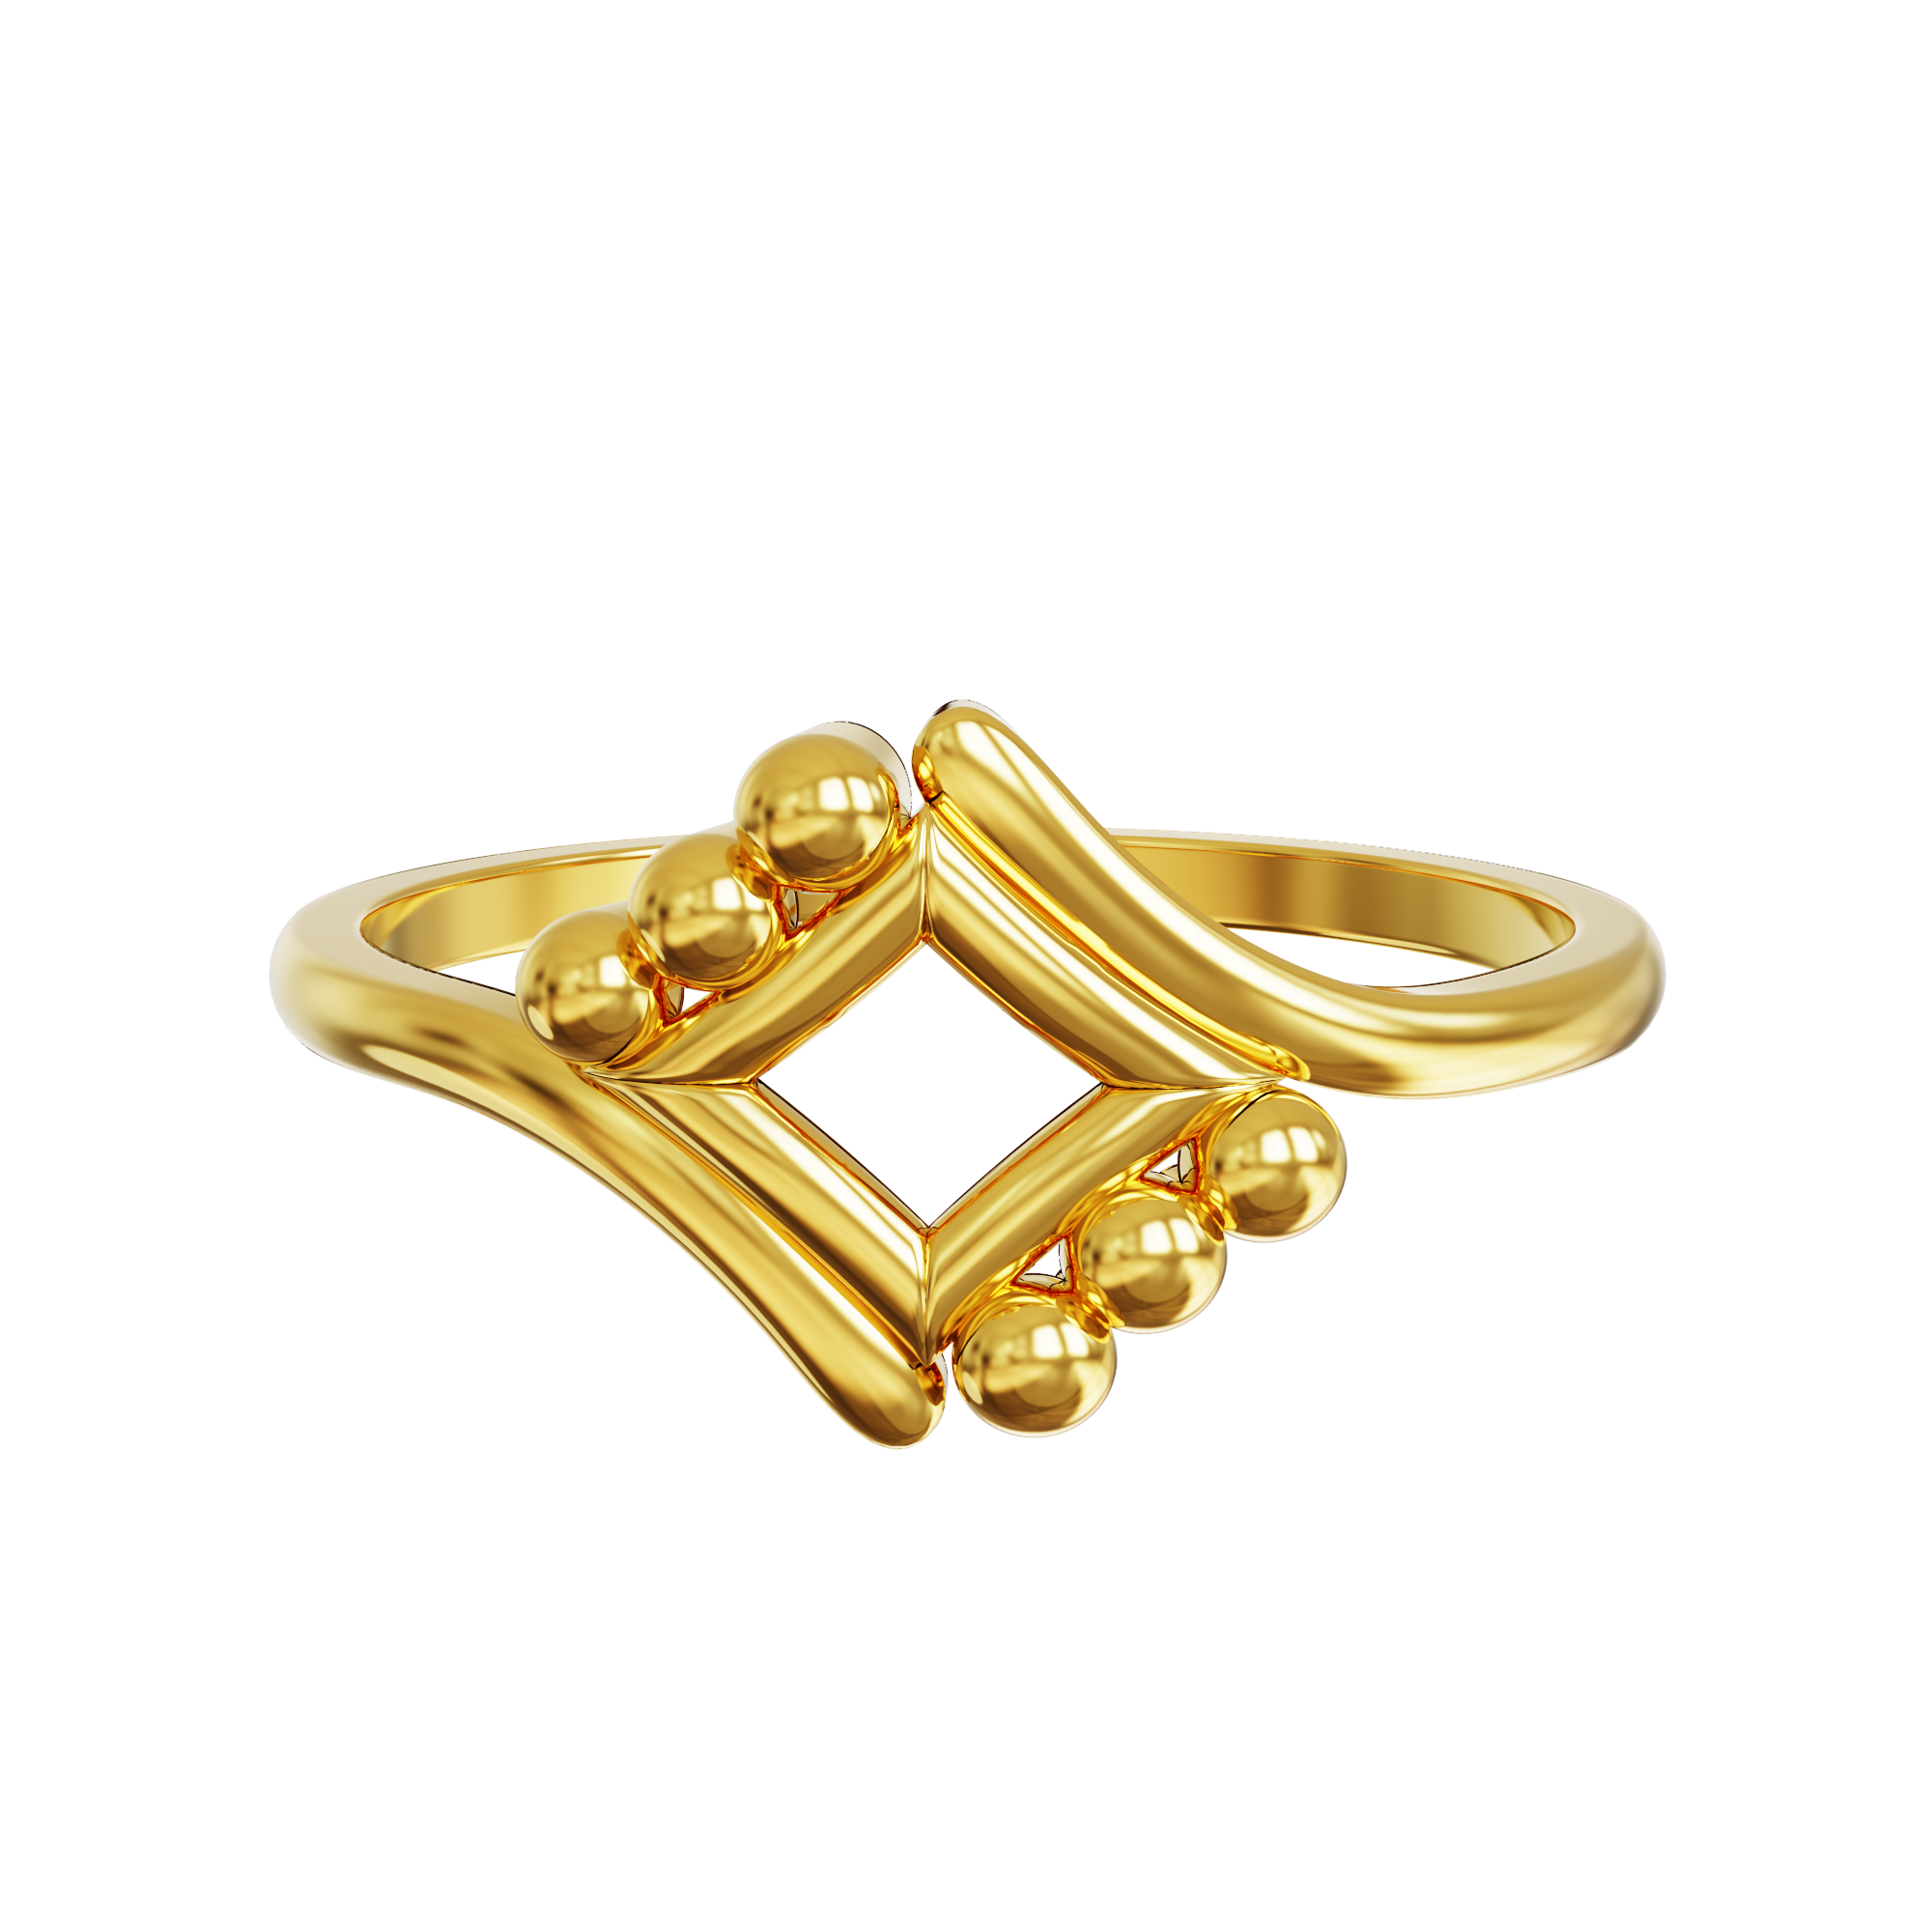 avsar Chennai 18kt Diamond Yellow Gold ring Price in India - Buy avsar  Chennai 18kt Diamond Yellow Gold ring online at Flipkart.com